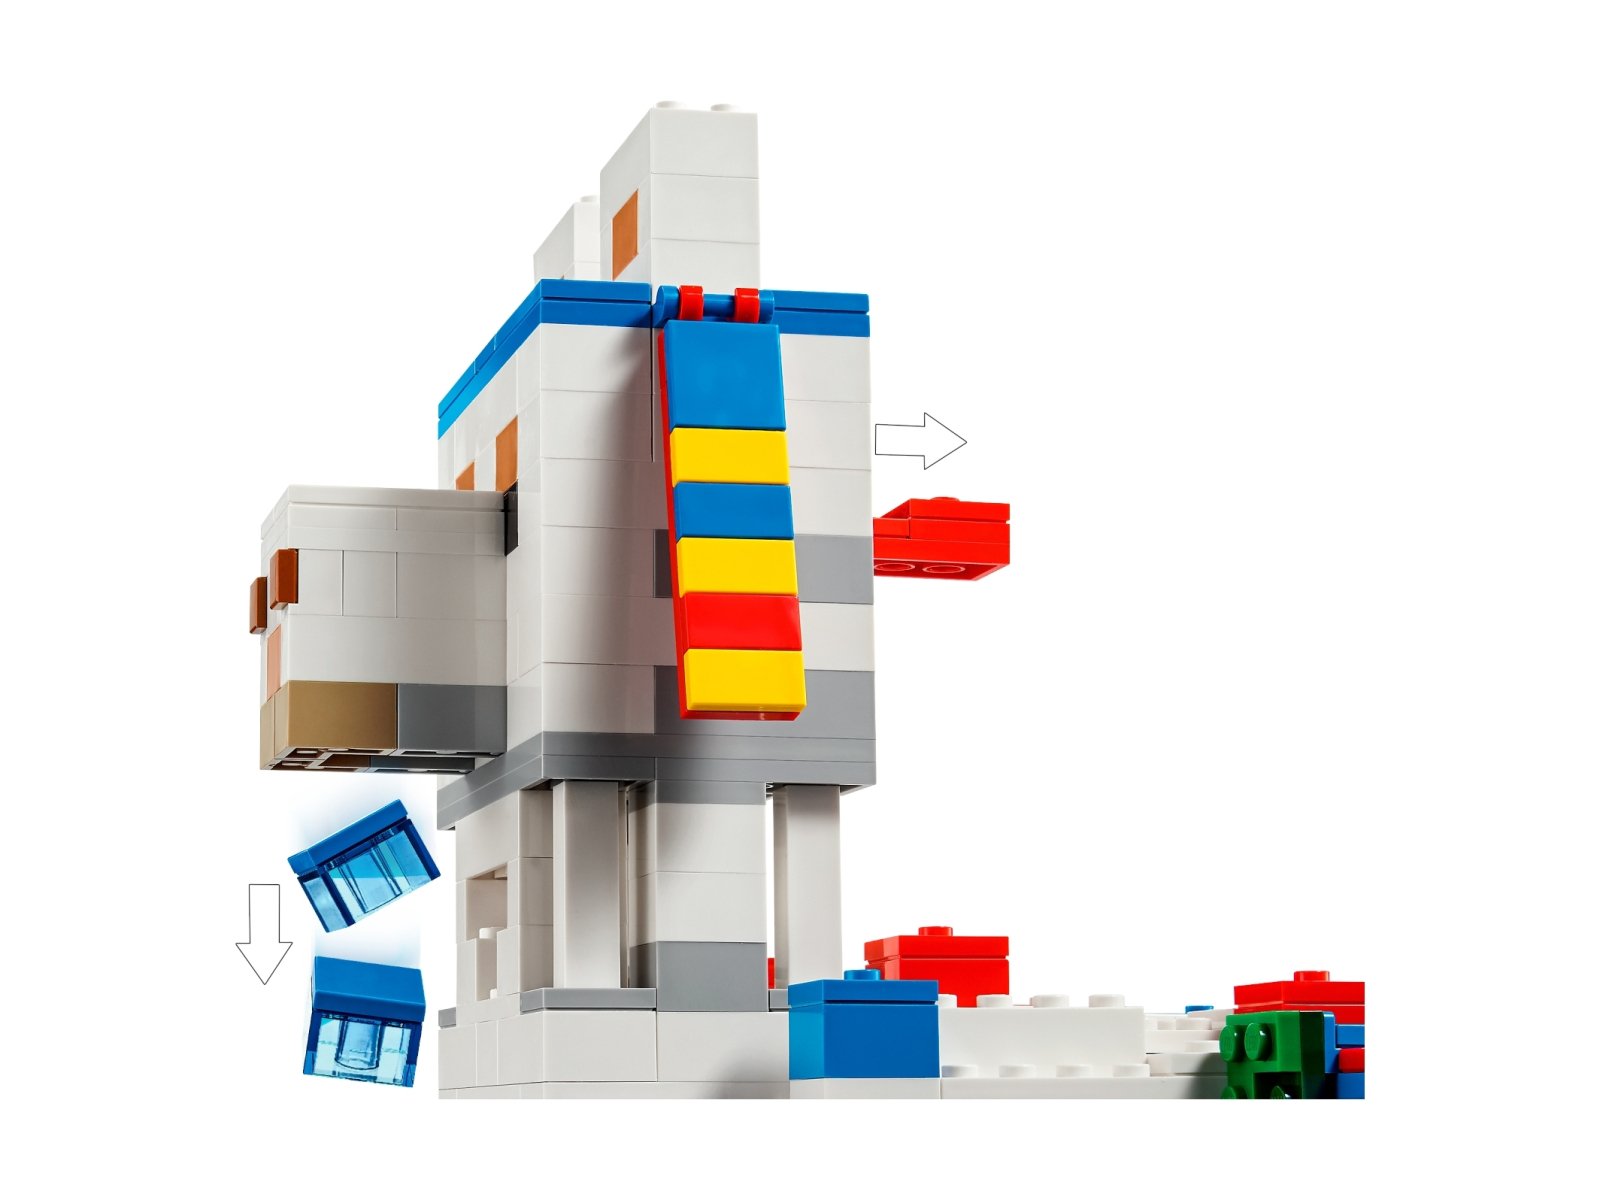 LEGO Minecraft 21188 Wioska lamy